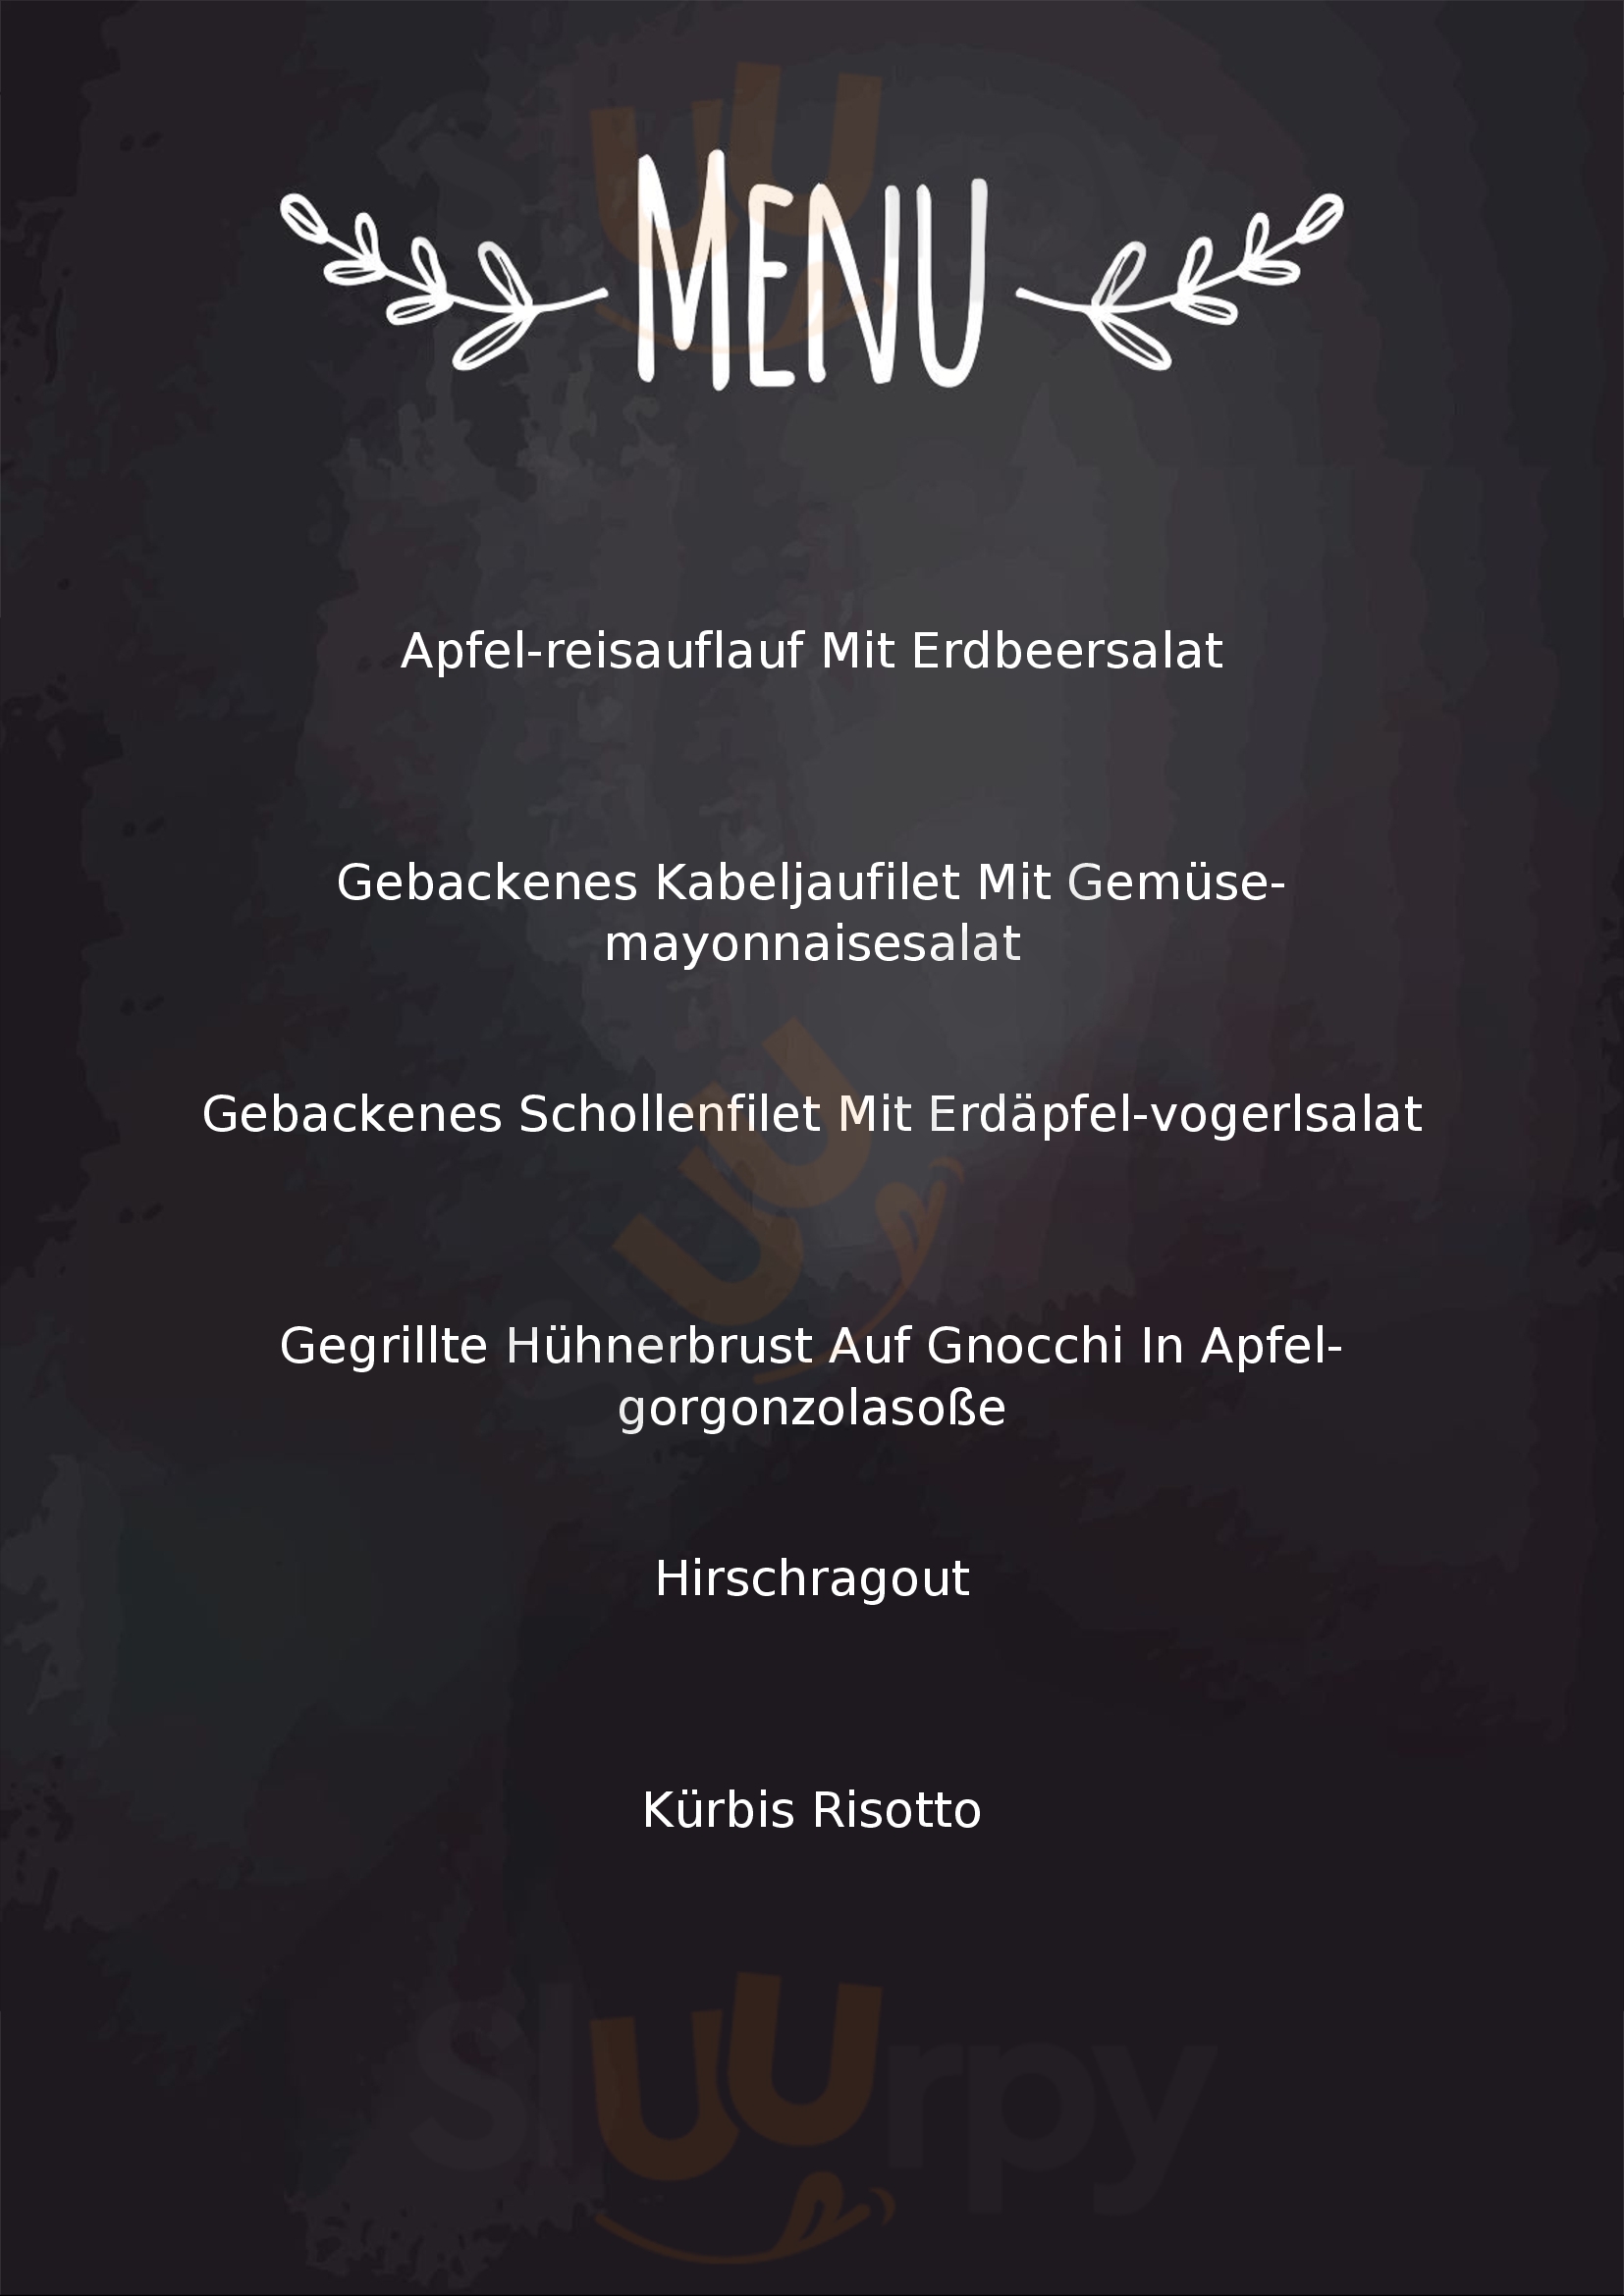 Cafe Restaurant Scheuhammer Im Wifi Eisenstadt Menu - 1